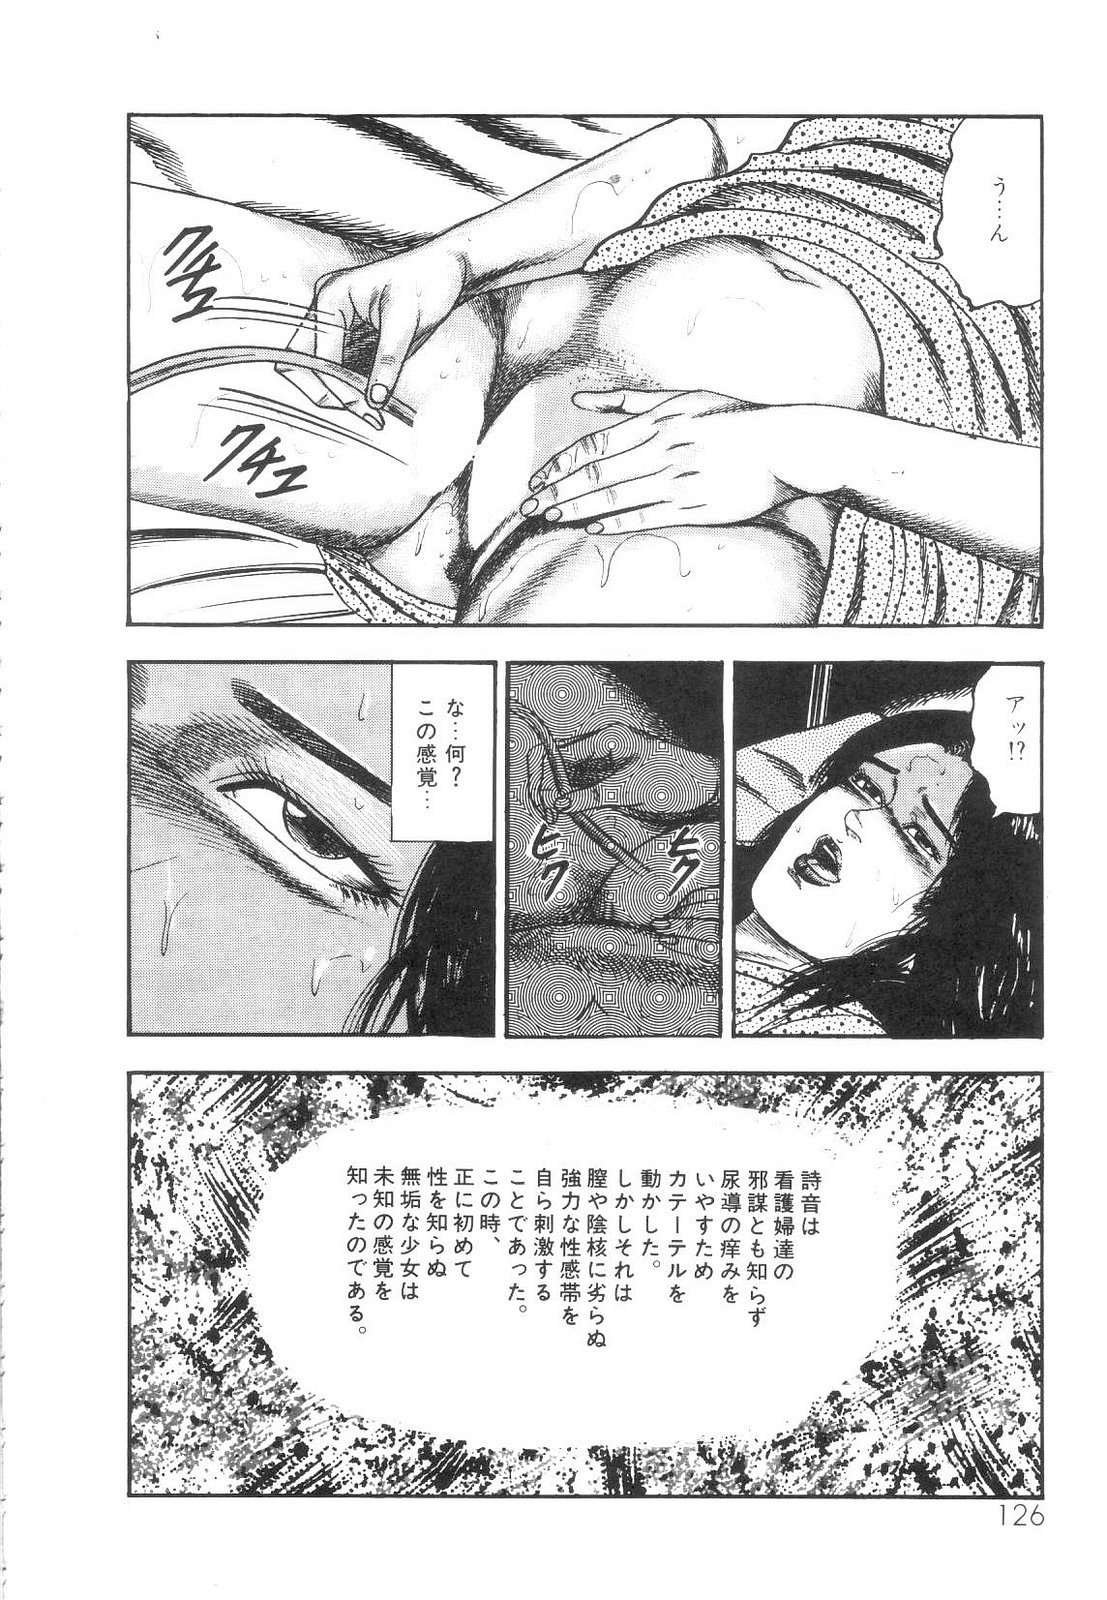 [Sanjou Tomomi] Shiro no Mokushiroku Vol. 1 - Sei Shojo Shion no Shou 126